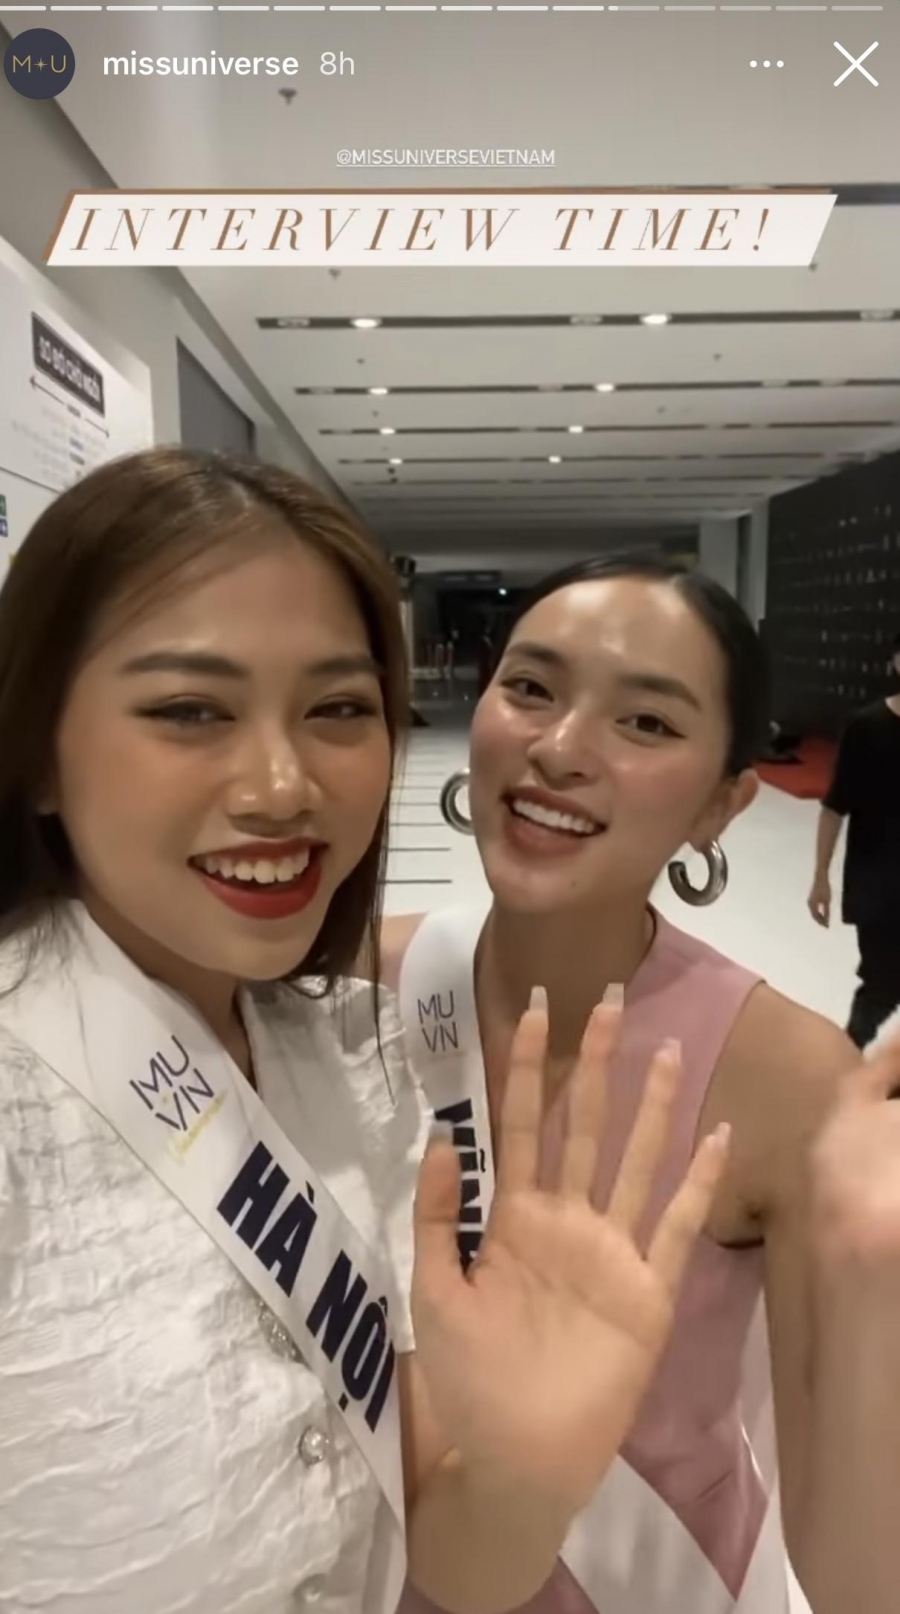 Miss Universe cũng chia sẻ thêm khoảnh khắc 2 thí sinh Phạm Diệu Linh (SBD 208) và Nguyễn Anh Khuê (SBD 200) khoe màn giao lưu tiếng Anh đầy tự tin và hào hứng trước khi bước vào phần thi của mình.